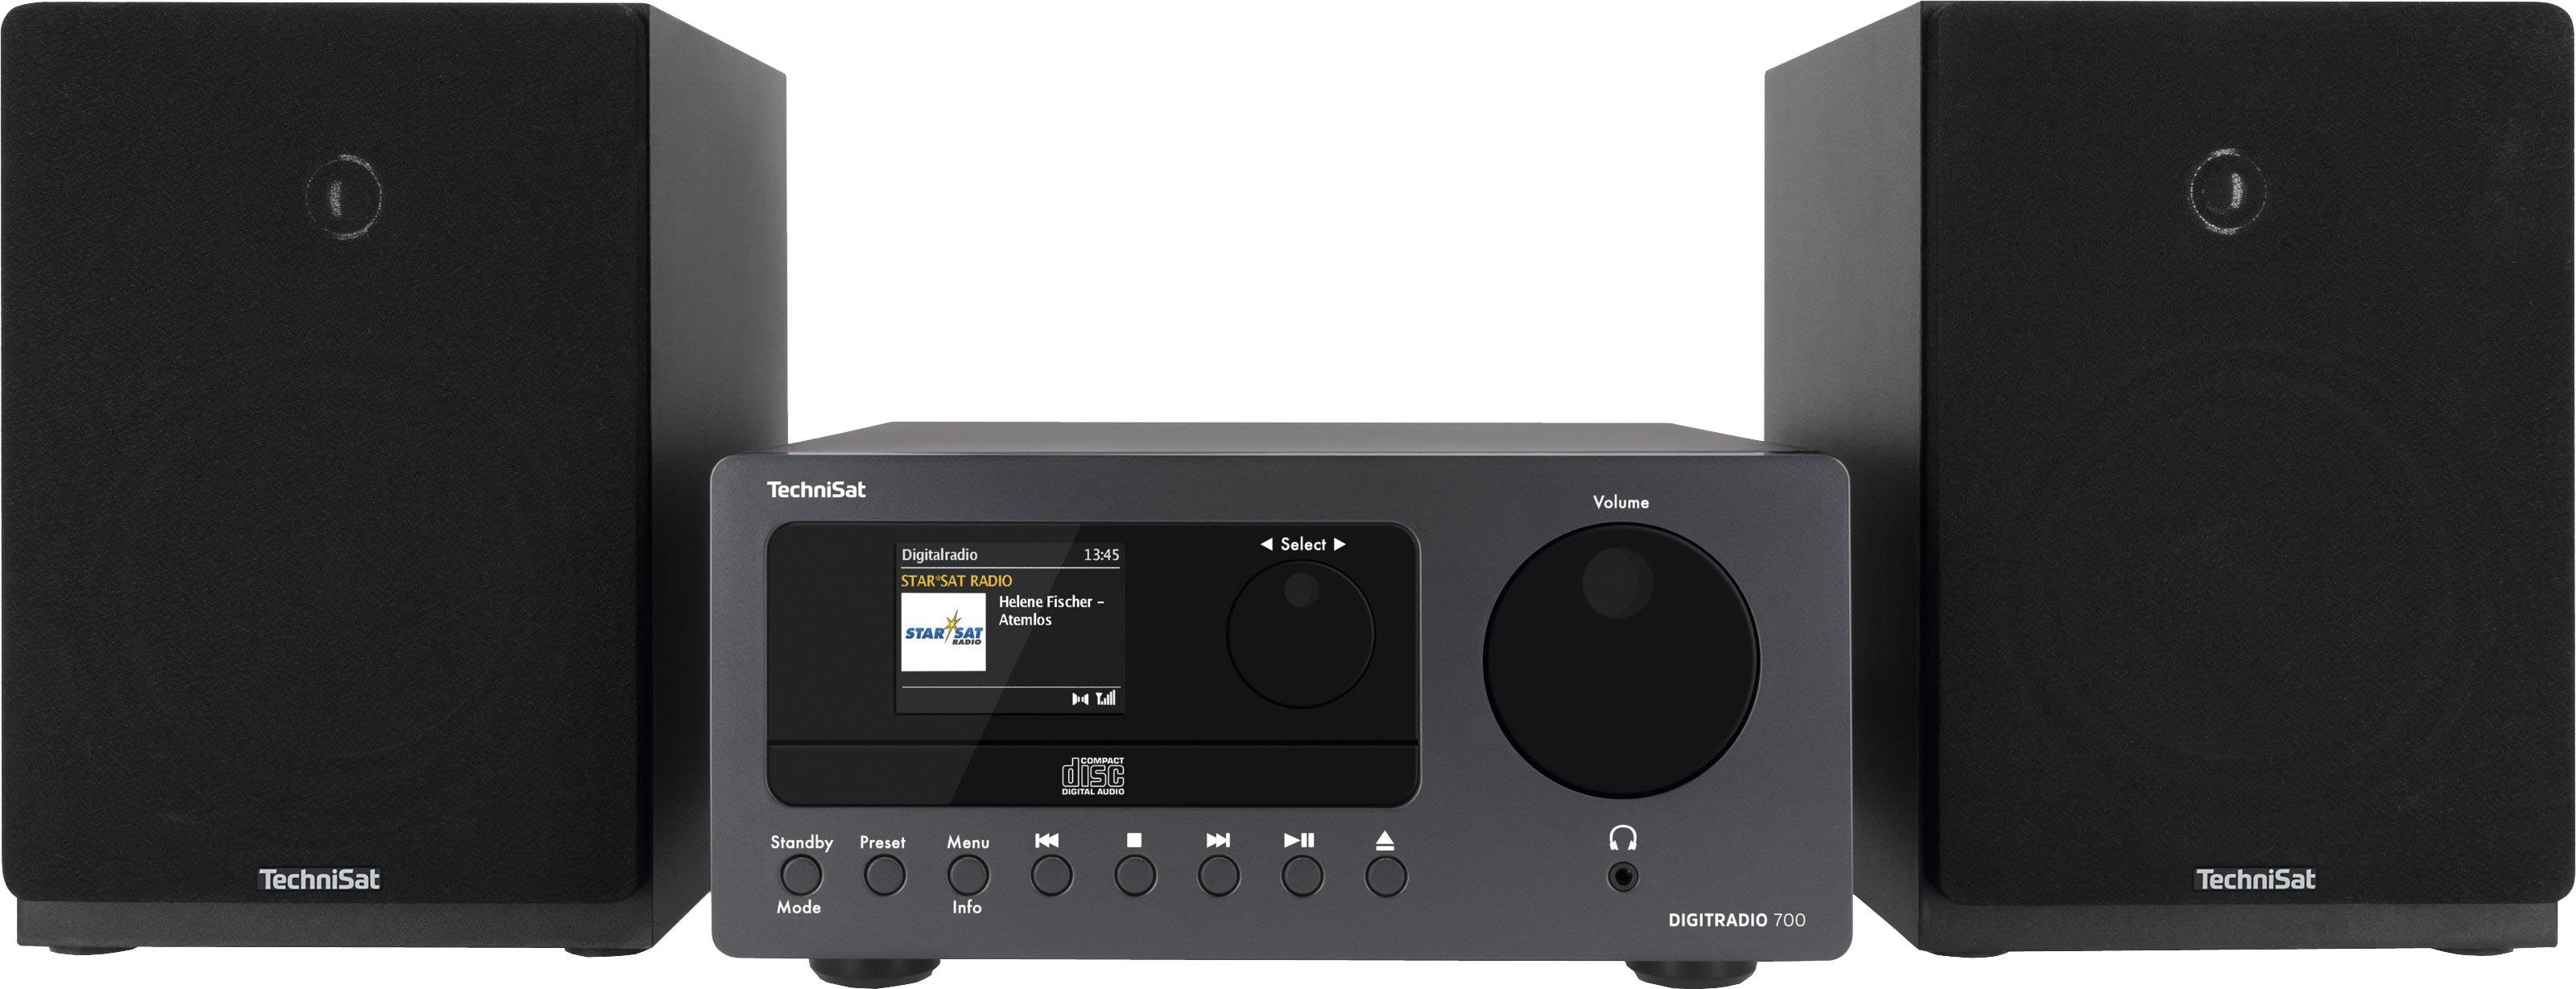 [Sie können echte Produkte zu günstigen Preisen kaufen!] TechniSat DIGITRADIO 700 MP3-Wiedergabe, UKW CD-Player mit (Digitalradio W), Internetradio, Bluetooth-Audiostreaming Stereo- 40 (DAB), mit RDS, Microanlage